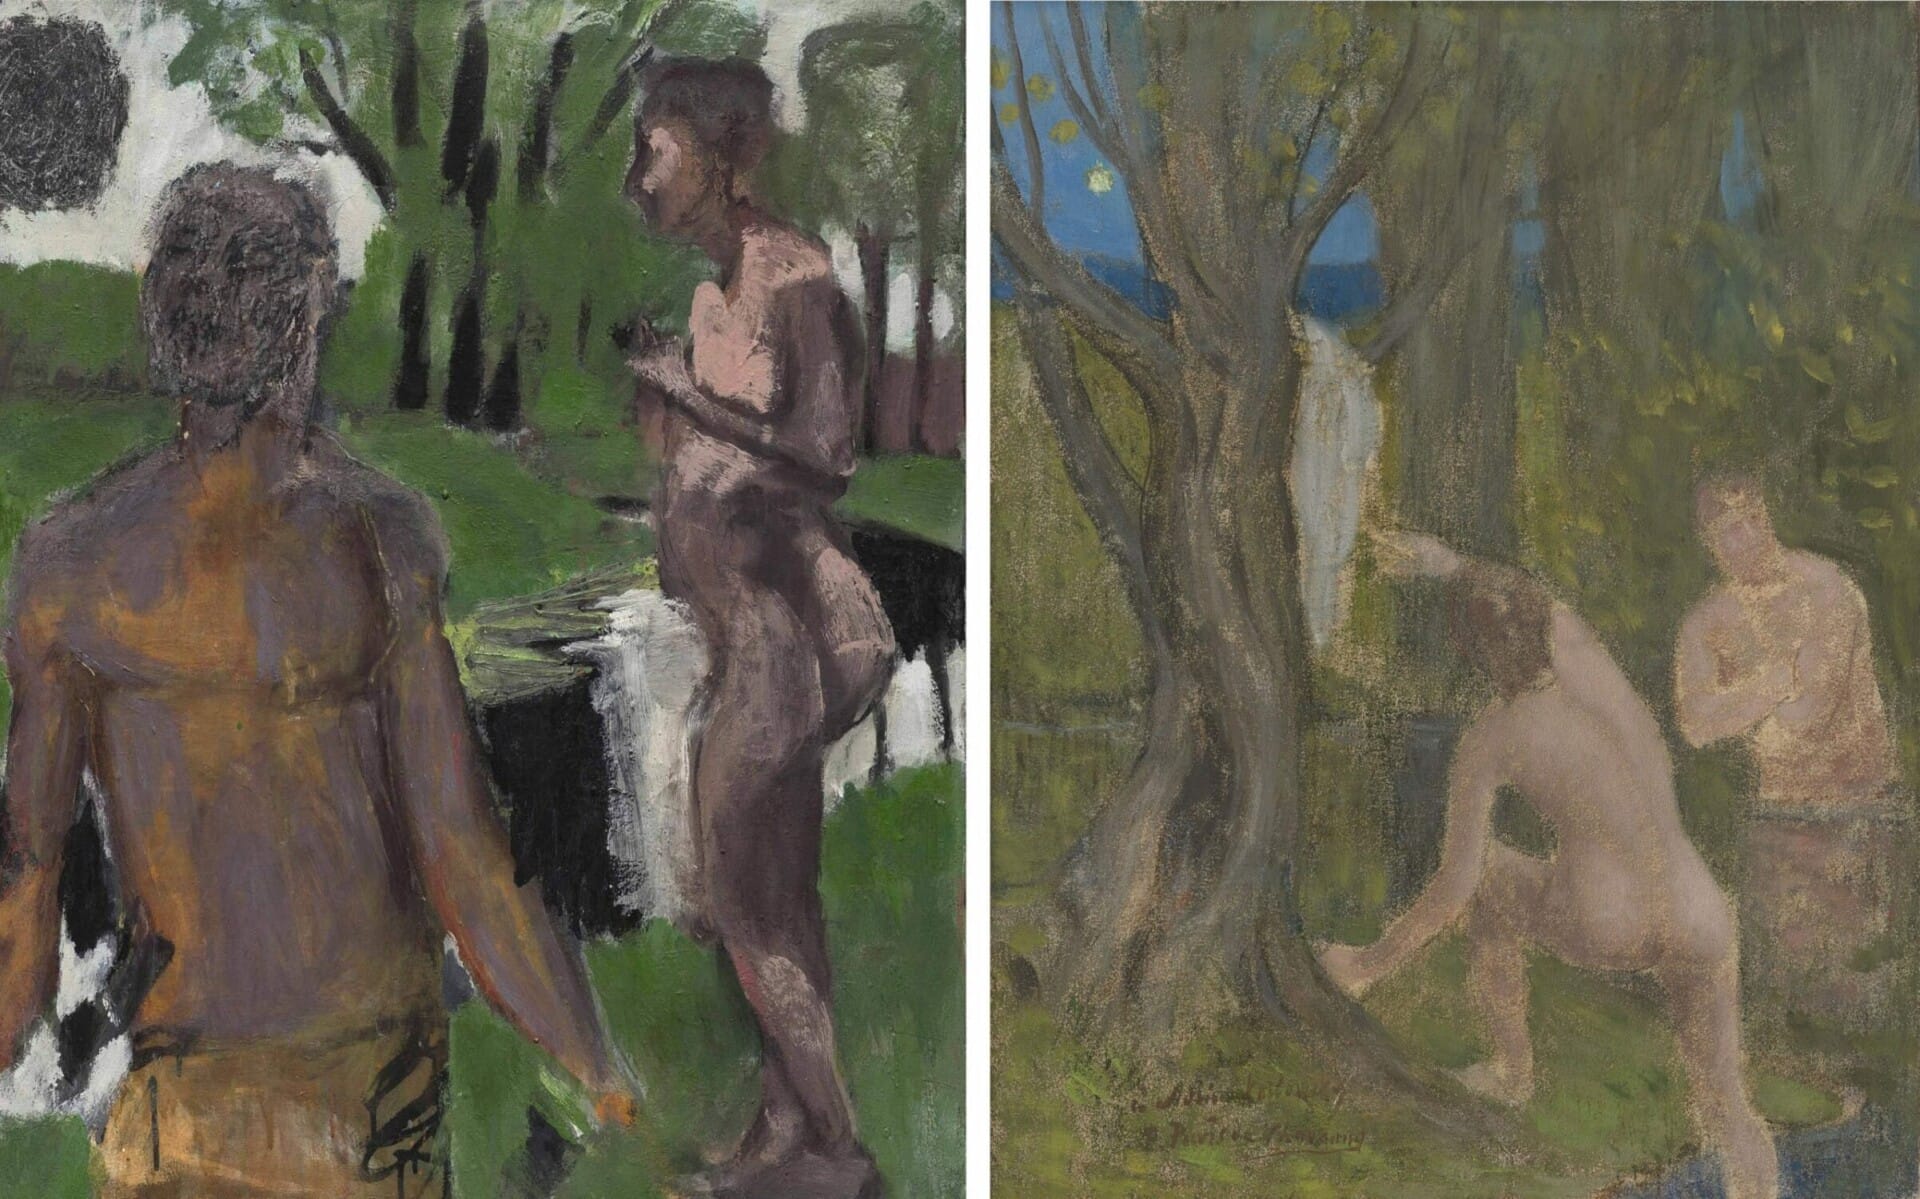 Left: Markus Lüpertz, "Mistelzweig (Mistletoe)", 2017 Mixed media on canvas in artist's frame, 39 1/4 x 32 inches Right: Pierre Puvis de Chavannes, "Baigneurs dans un sous-bois (Bathers Under Trees)", ca. 1890-91 Oil, pastel on canvas, 16 1/4 x 12 1/2 inches